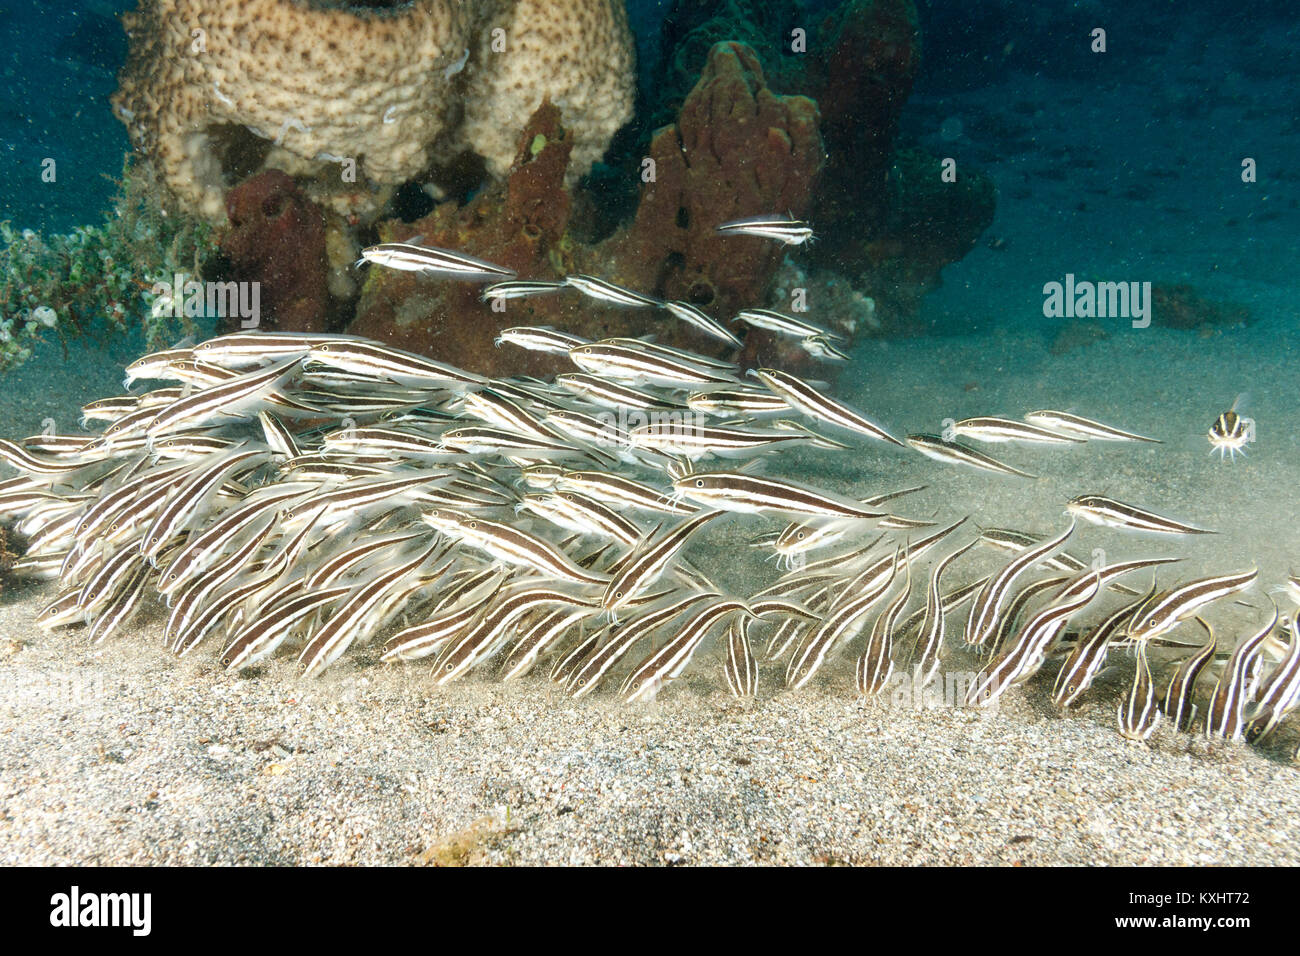 Catfish, Bunaken National Marine Park, North Sulawesi, Indonesia Stock Photo